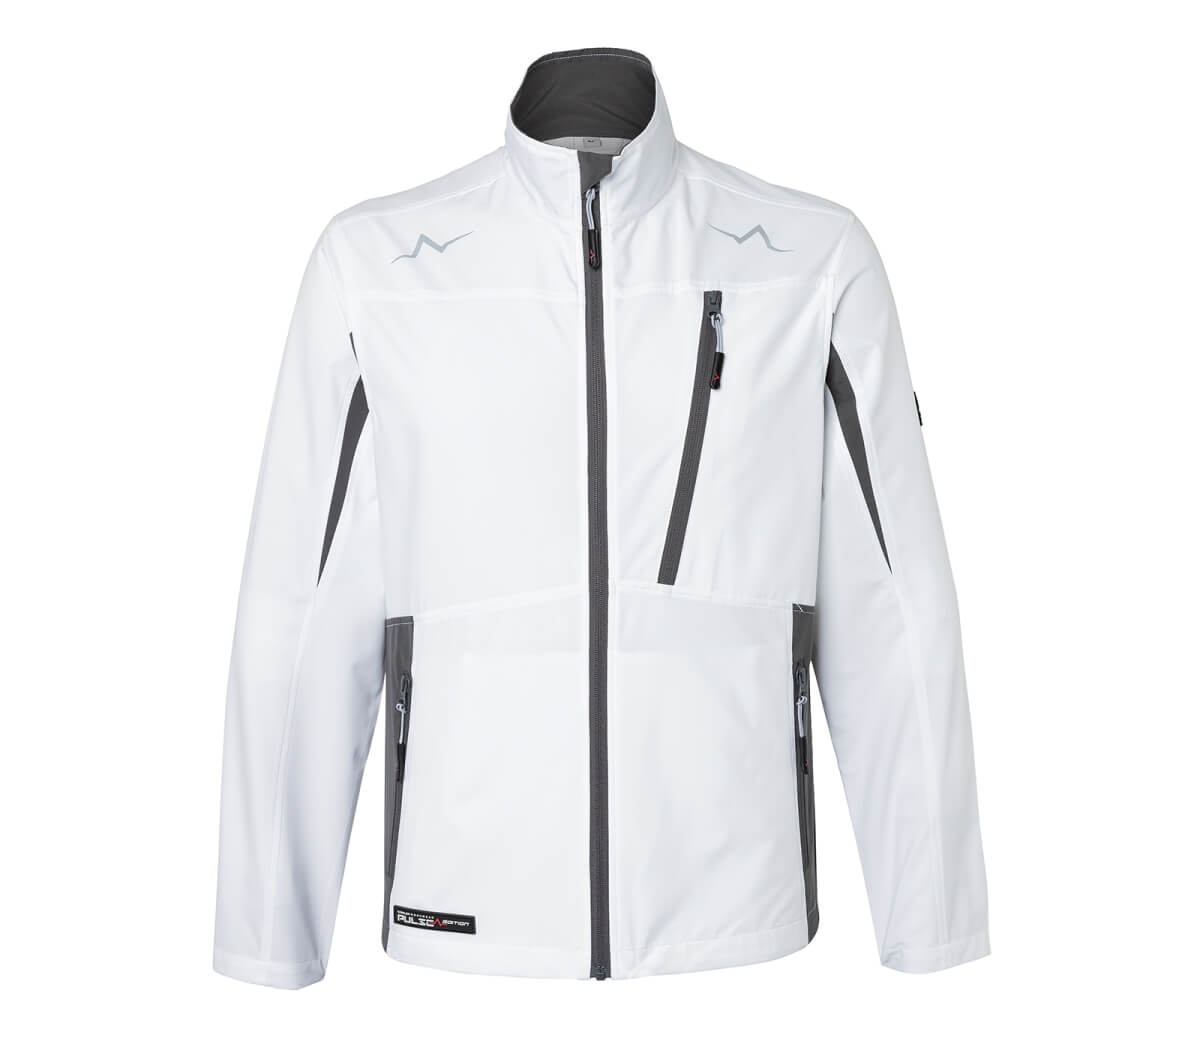 KÜBLER PULSE ECO Ultrashell Jacke in Weiß-Anthrazit, Größe L, wasserabweisend mit hohem Kragen